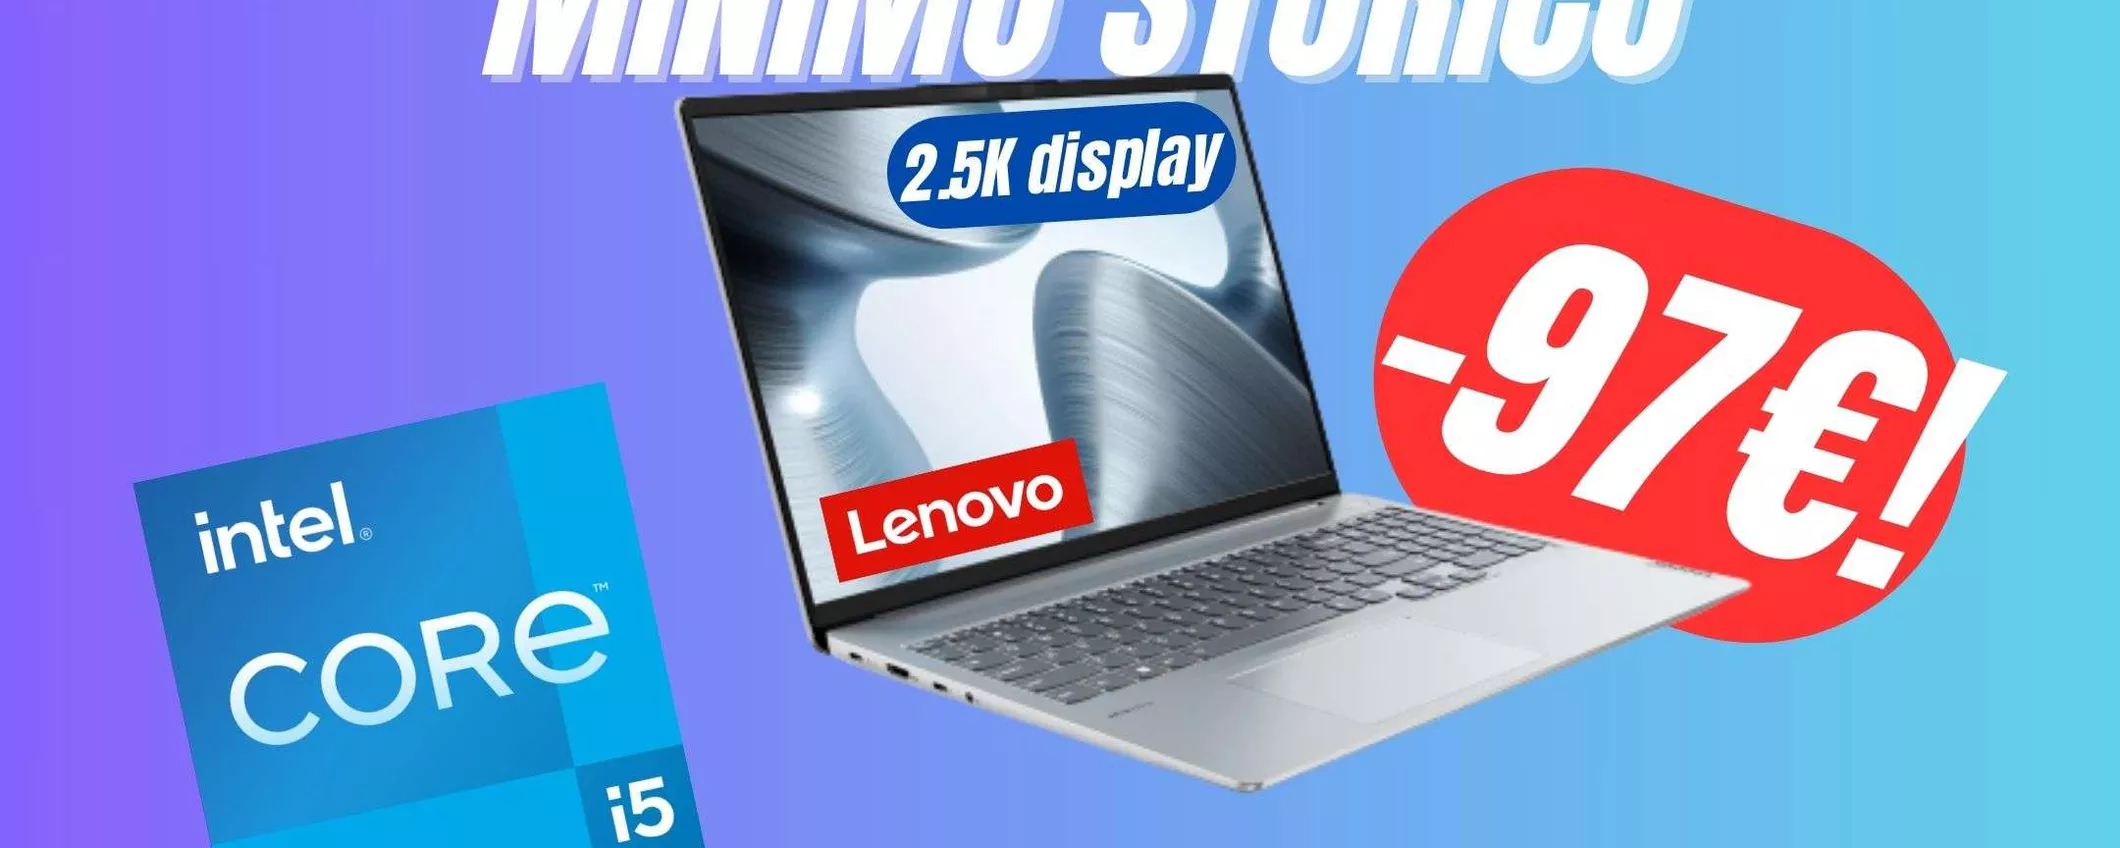 Il laptop perfetto con Intel Core i5 e Display 2.5K crolla al MINIMO SOTIRCO su Amazon!